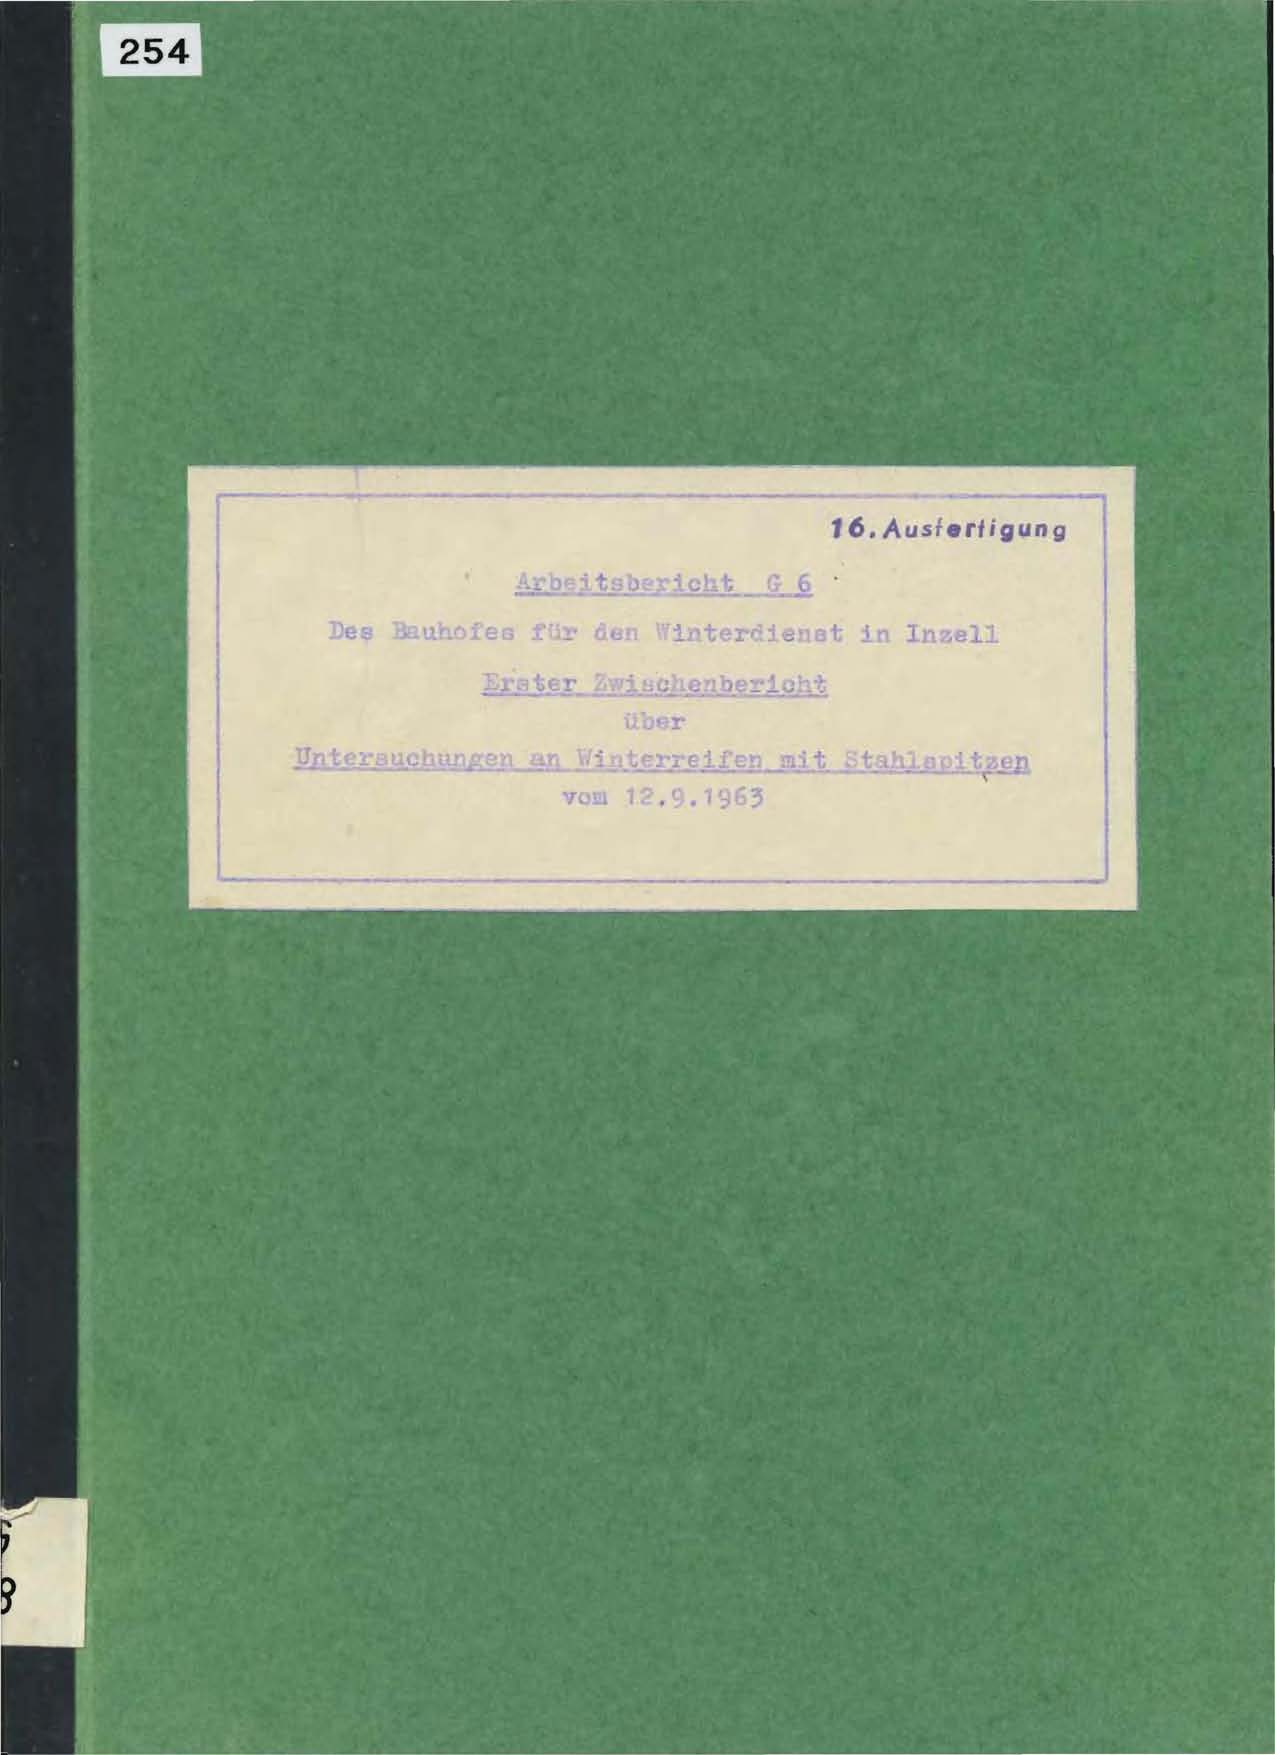 Arbeitsbericht G6 des Bauhofes für den Winterdienst in Inzell vom 12. September 1963